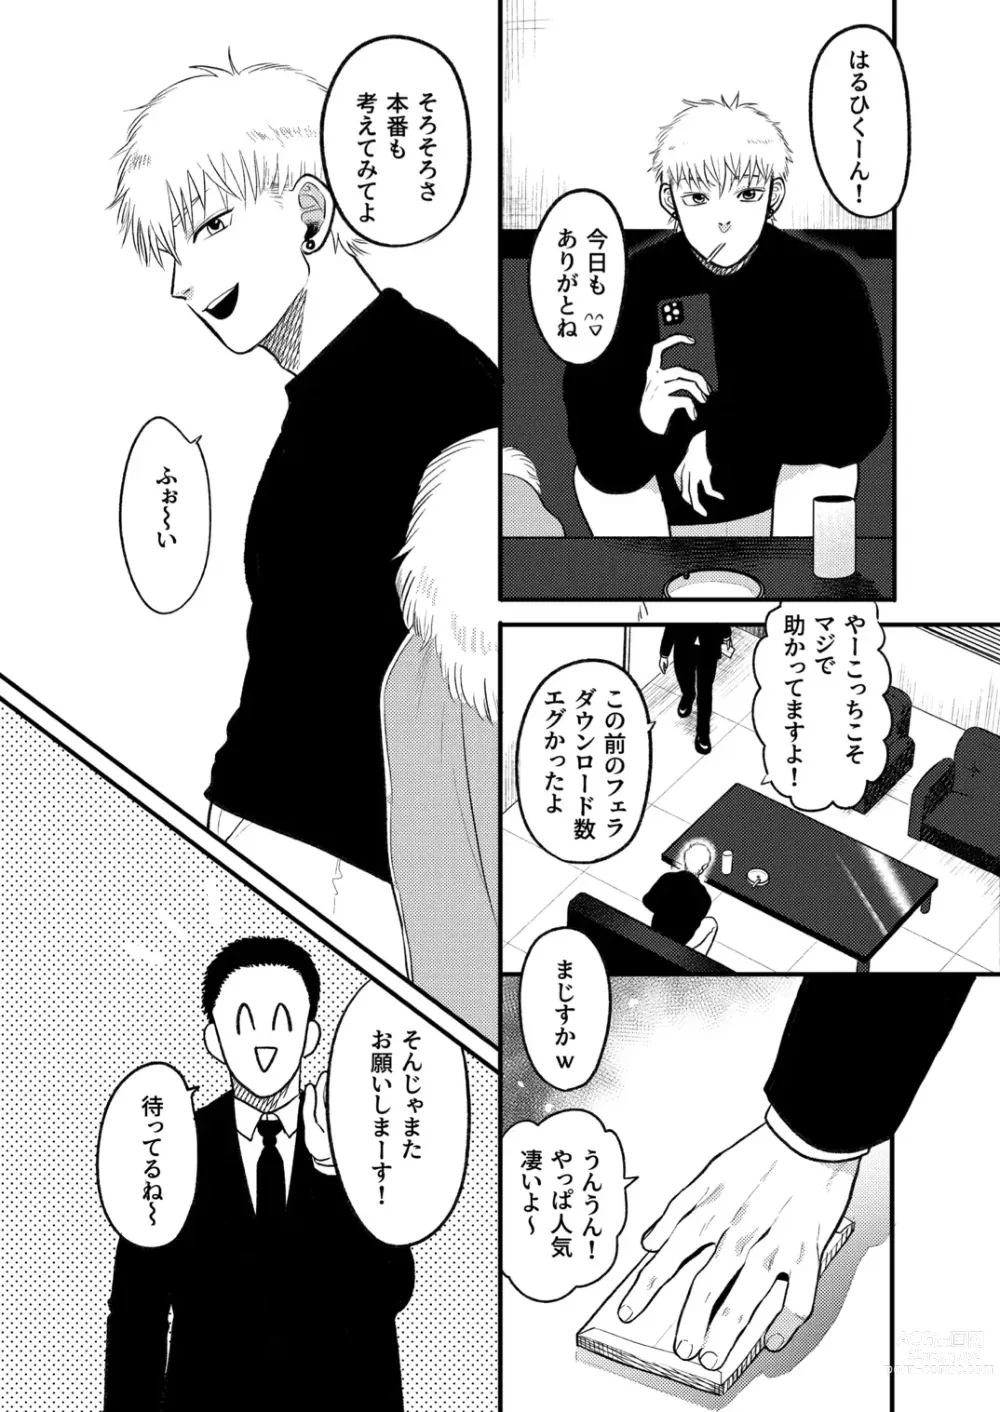 Page 3 of doujinshi Kashikoi Okane no Kasegikata